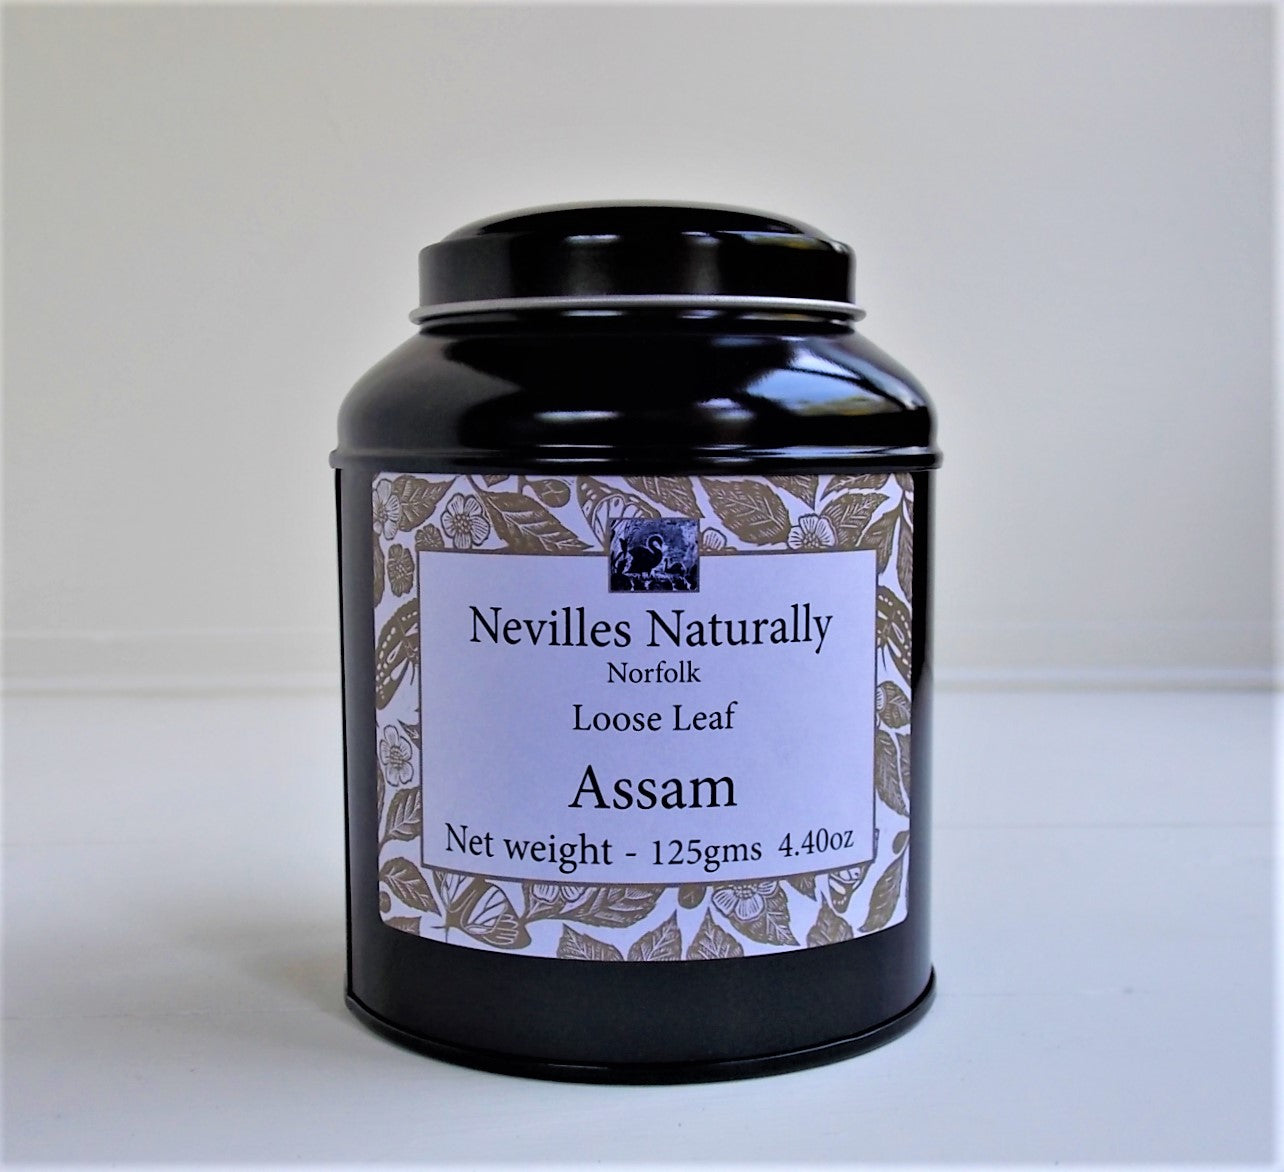 Assam Loose Leaf Tea in a Caddy